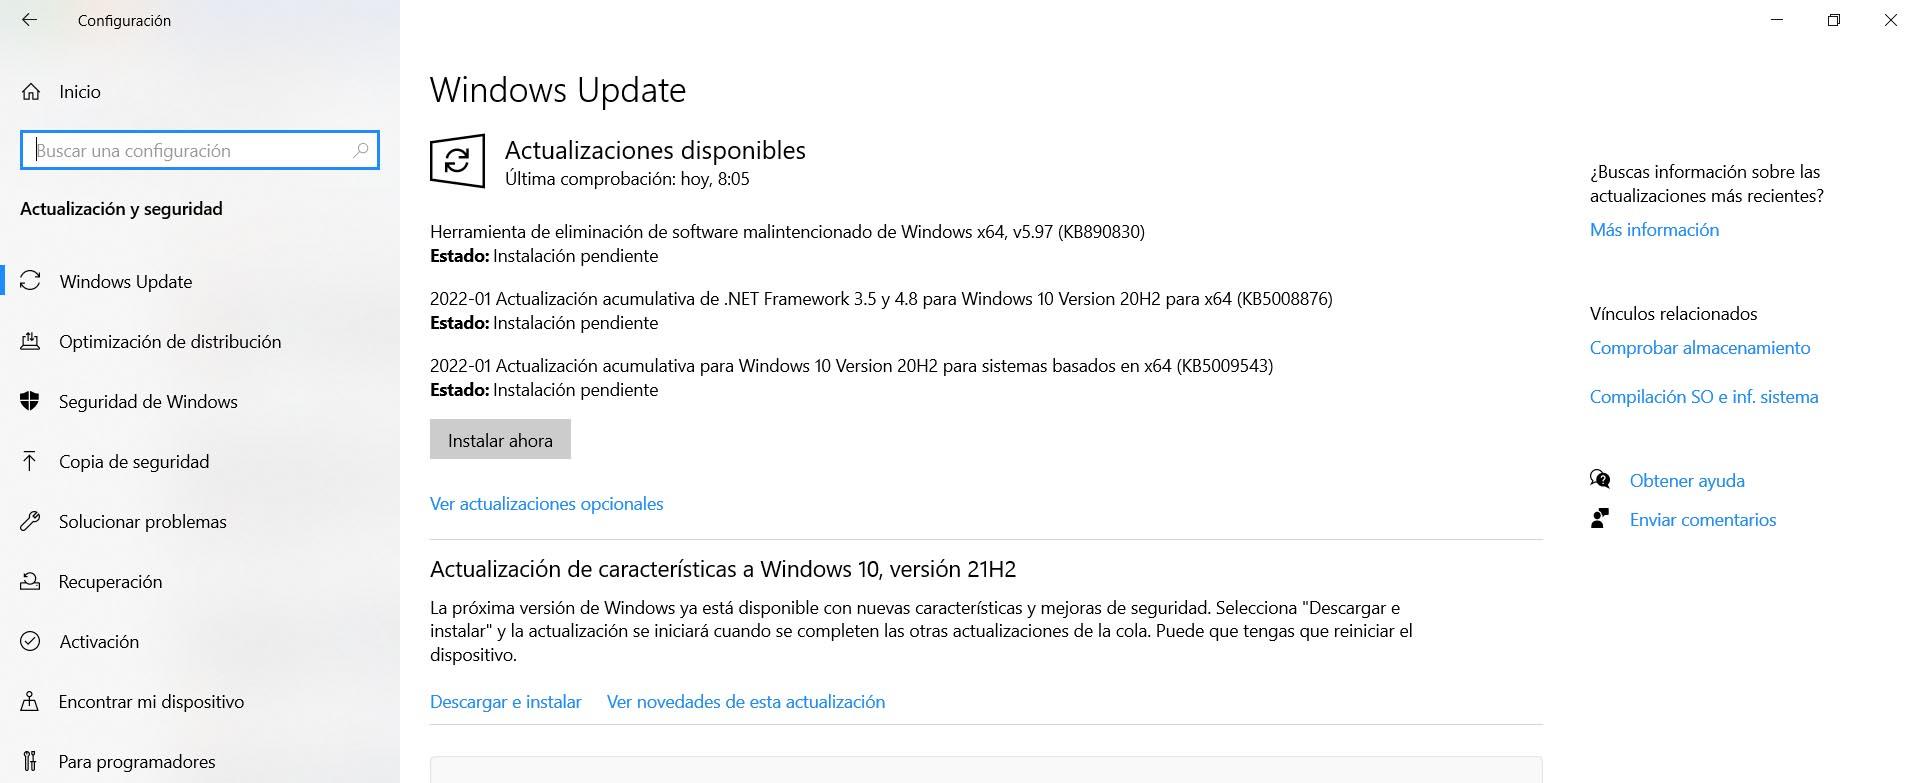 Actualizaciones de seguridad de Windows